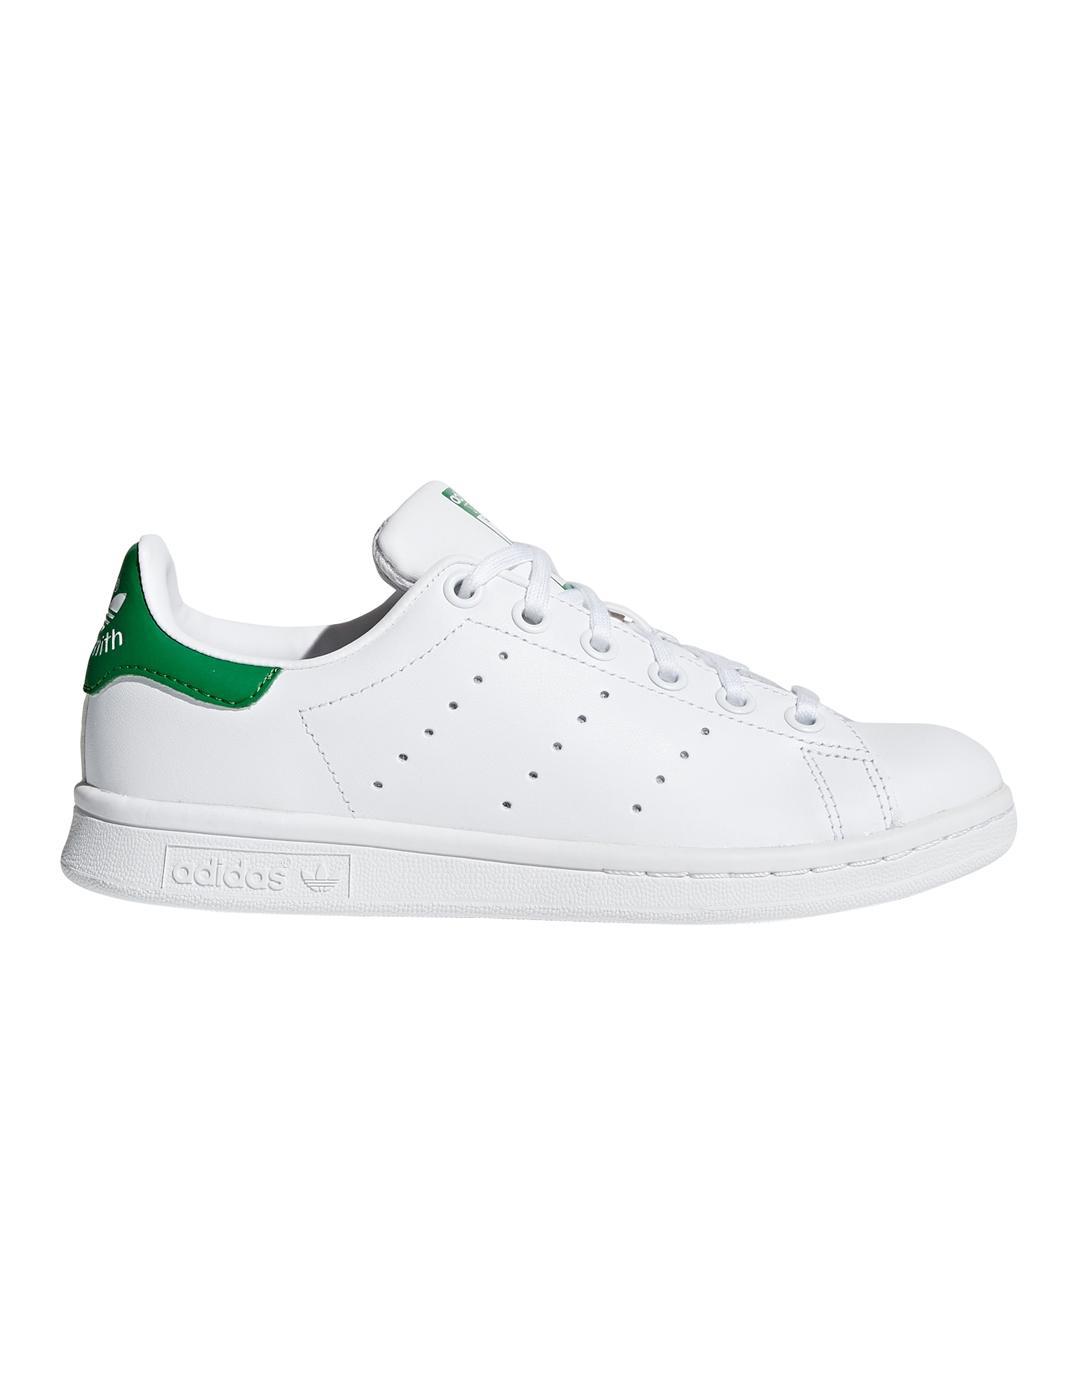 Zapatillas Adidas Stan Smith Junior Blanco/Verde